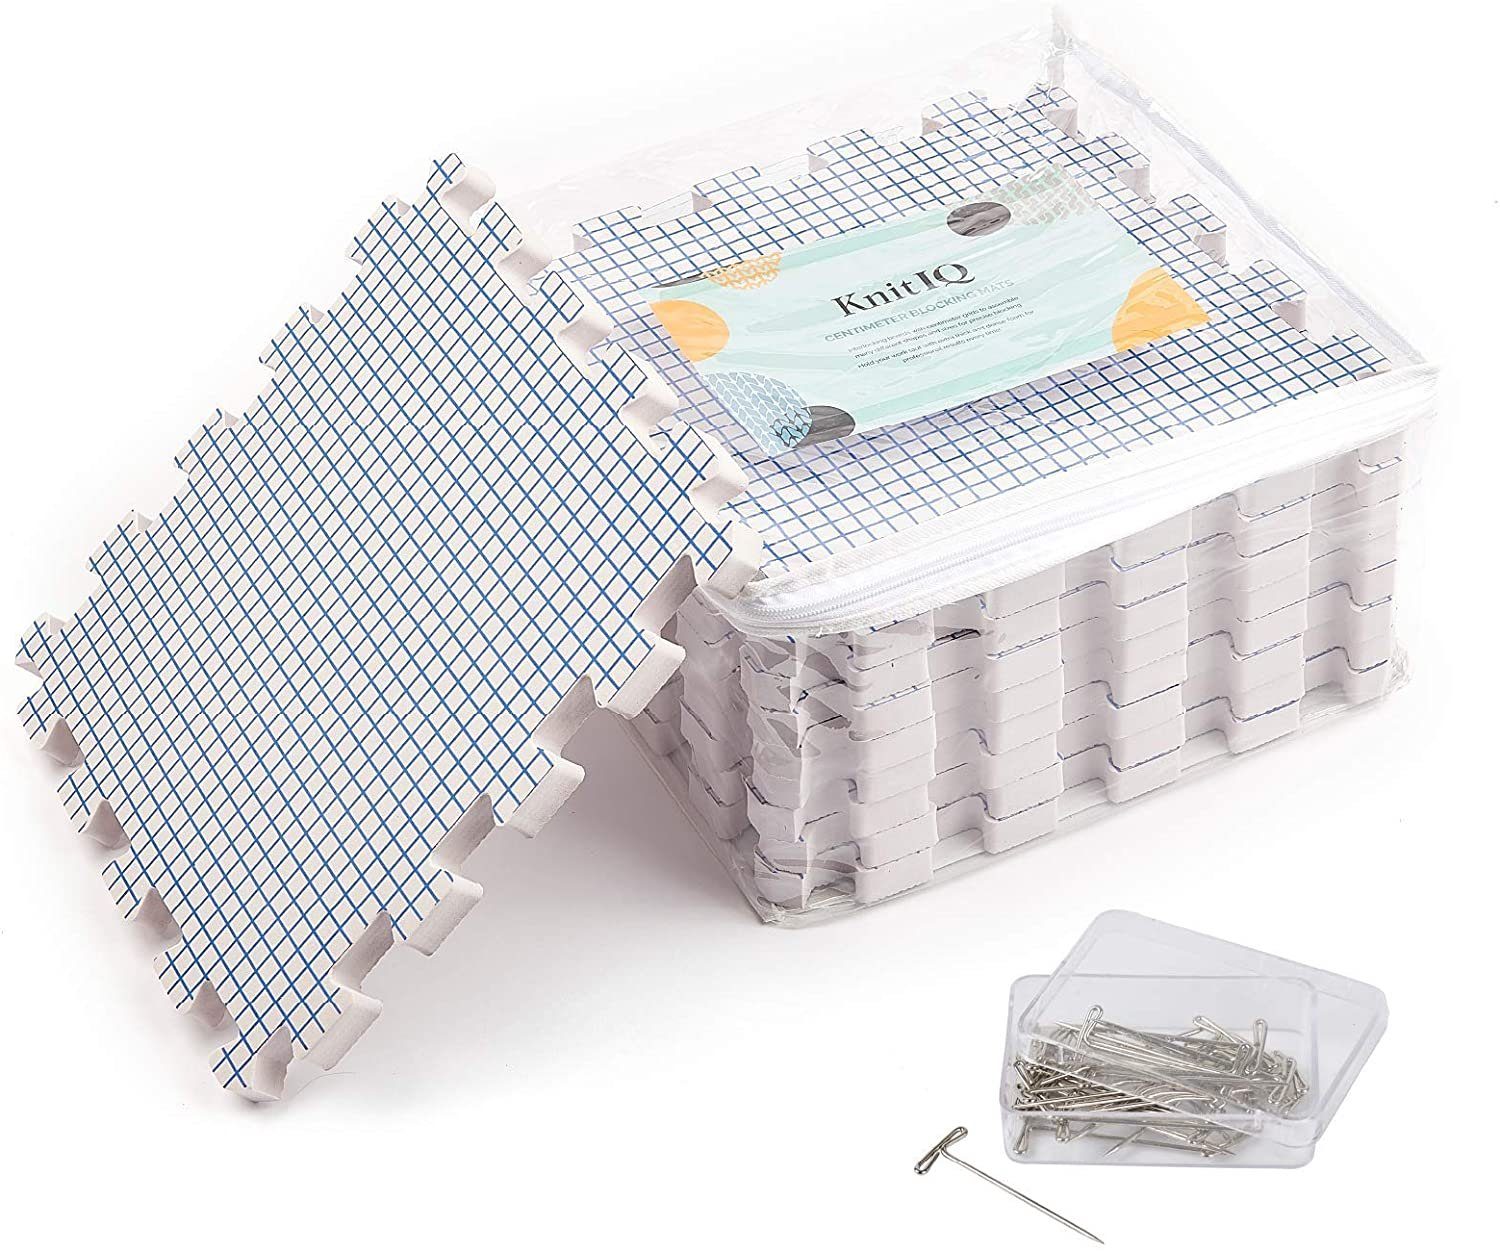 Tasche & Standard KnitIQ Stricken Set 9er cm Spannmatten Standard Nadeln Set Häkeln Spanngurt Weiss Weiß 100 1,9 Set Tiefe,